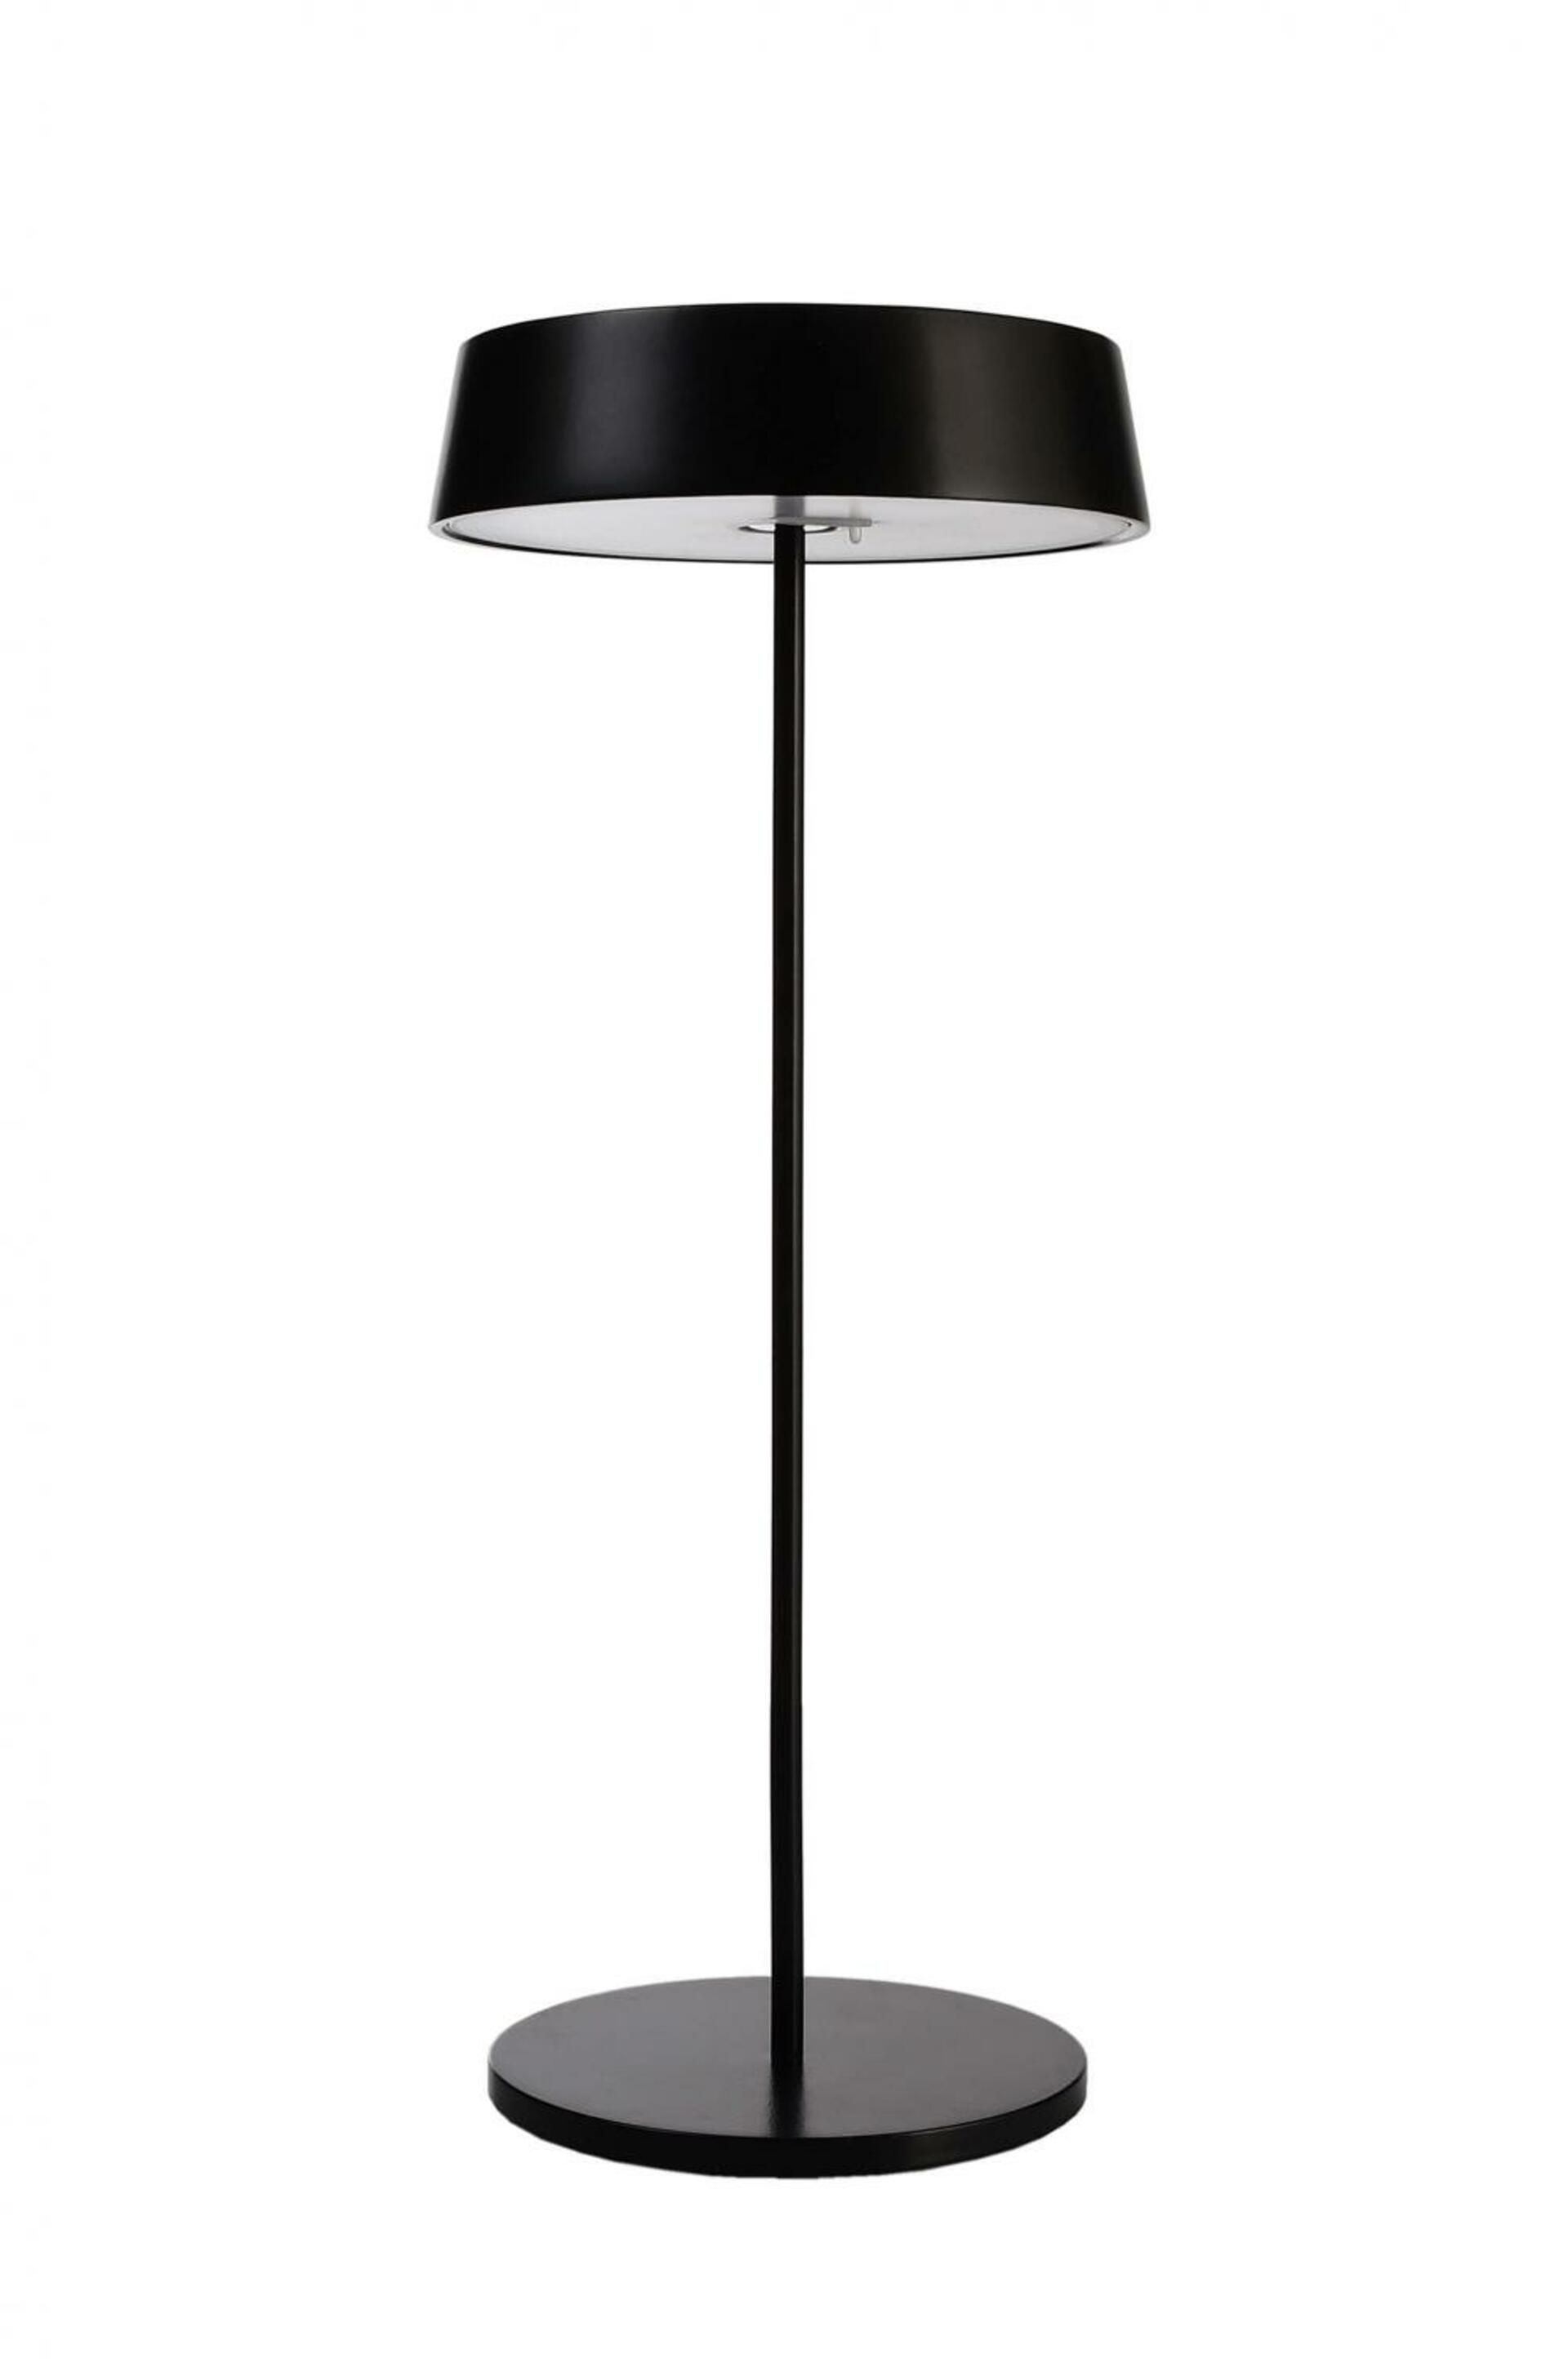 Light Impressions Deko-Light stolní lampa Miram stojací noha + hlava černá sada 3,7V DC 2,20 W 3000 K 196 lm 120 černá 620096